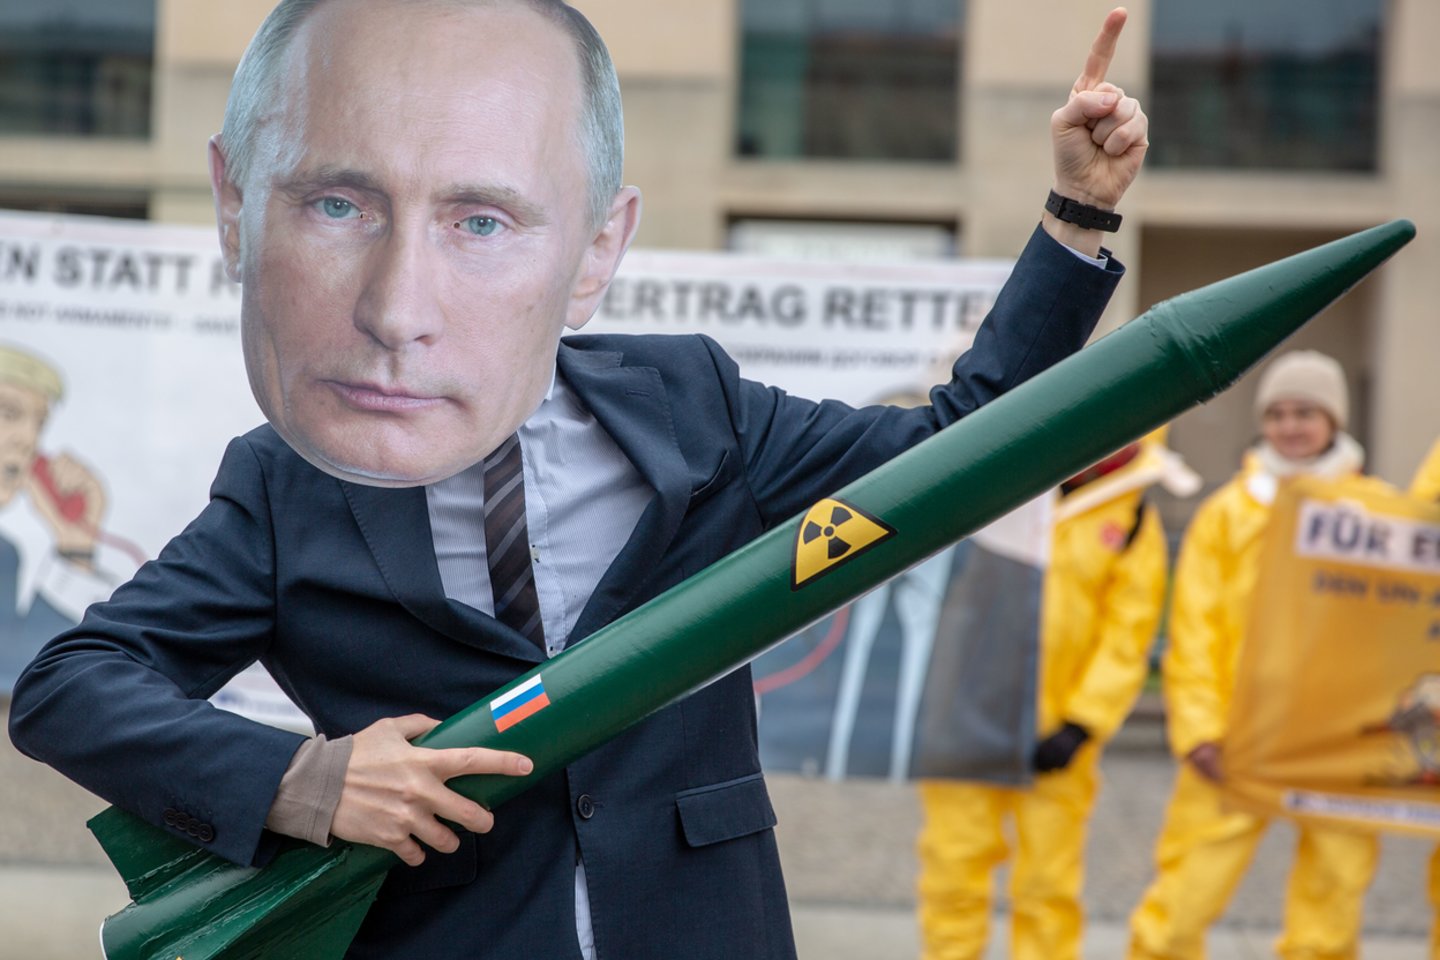 Sukūrusi naują raketų sistemą, Rusija pažeidė branduolinės ginkluotės mažinimo susitarimą.<br> Zumapress/Scanpix nuotr.